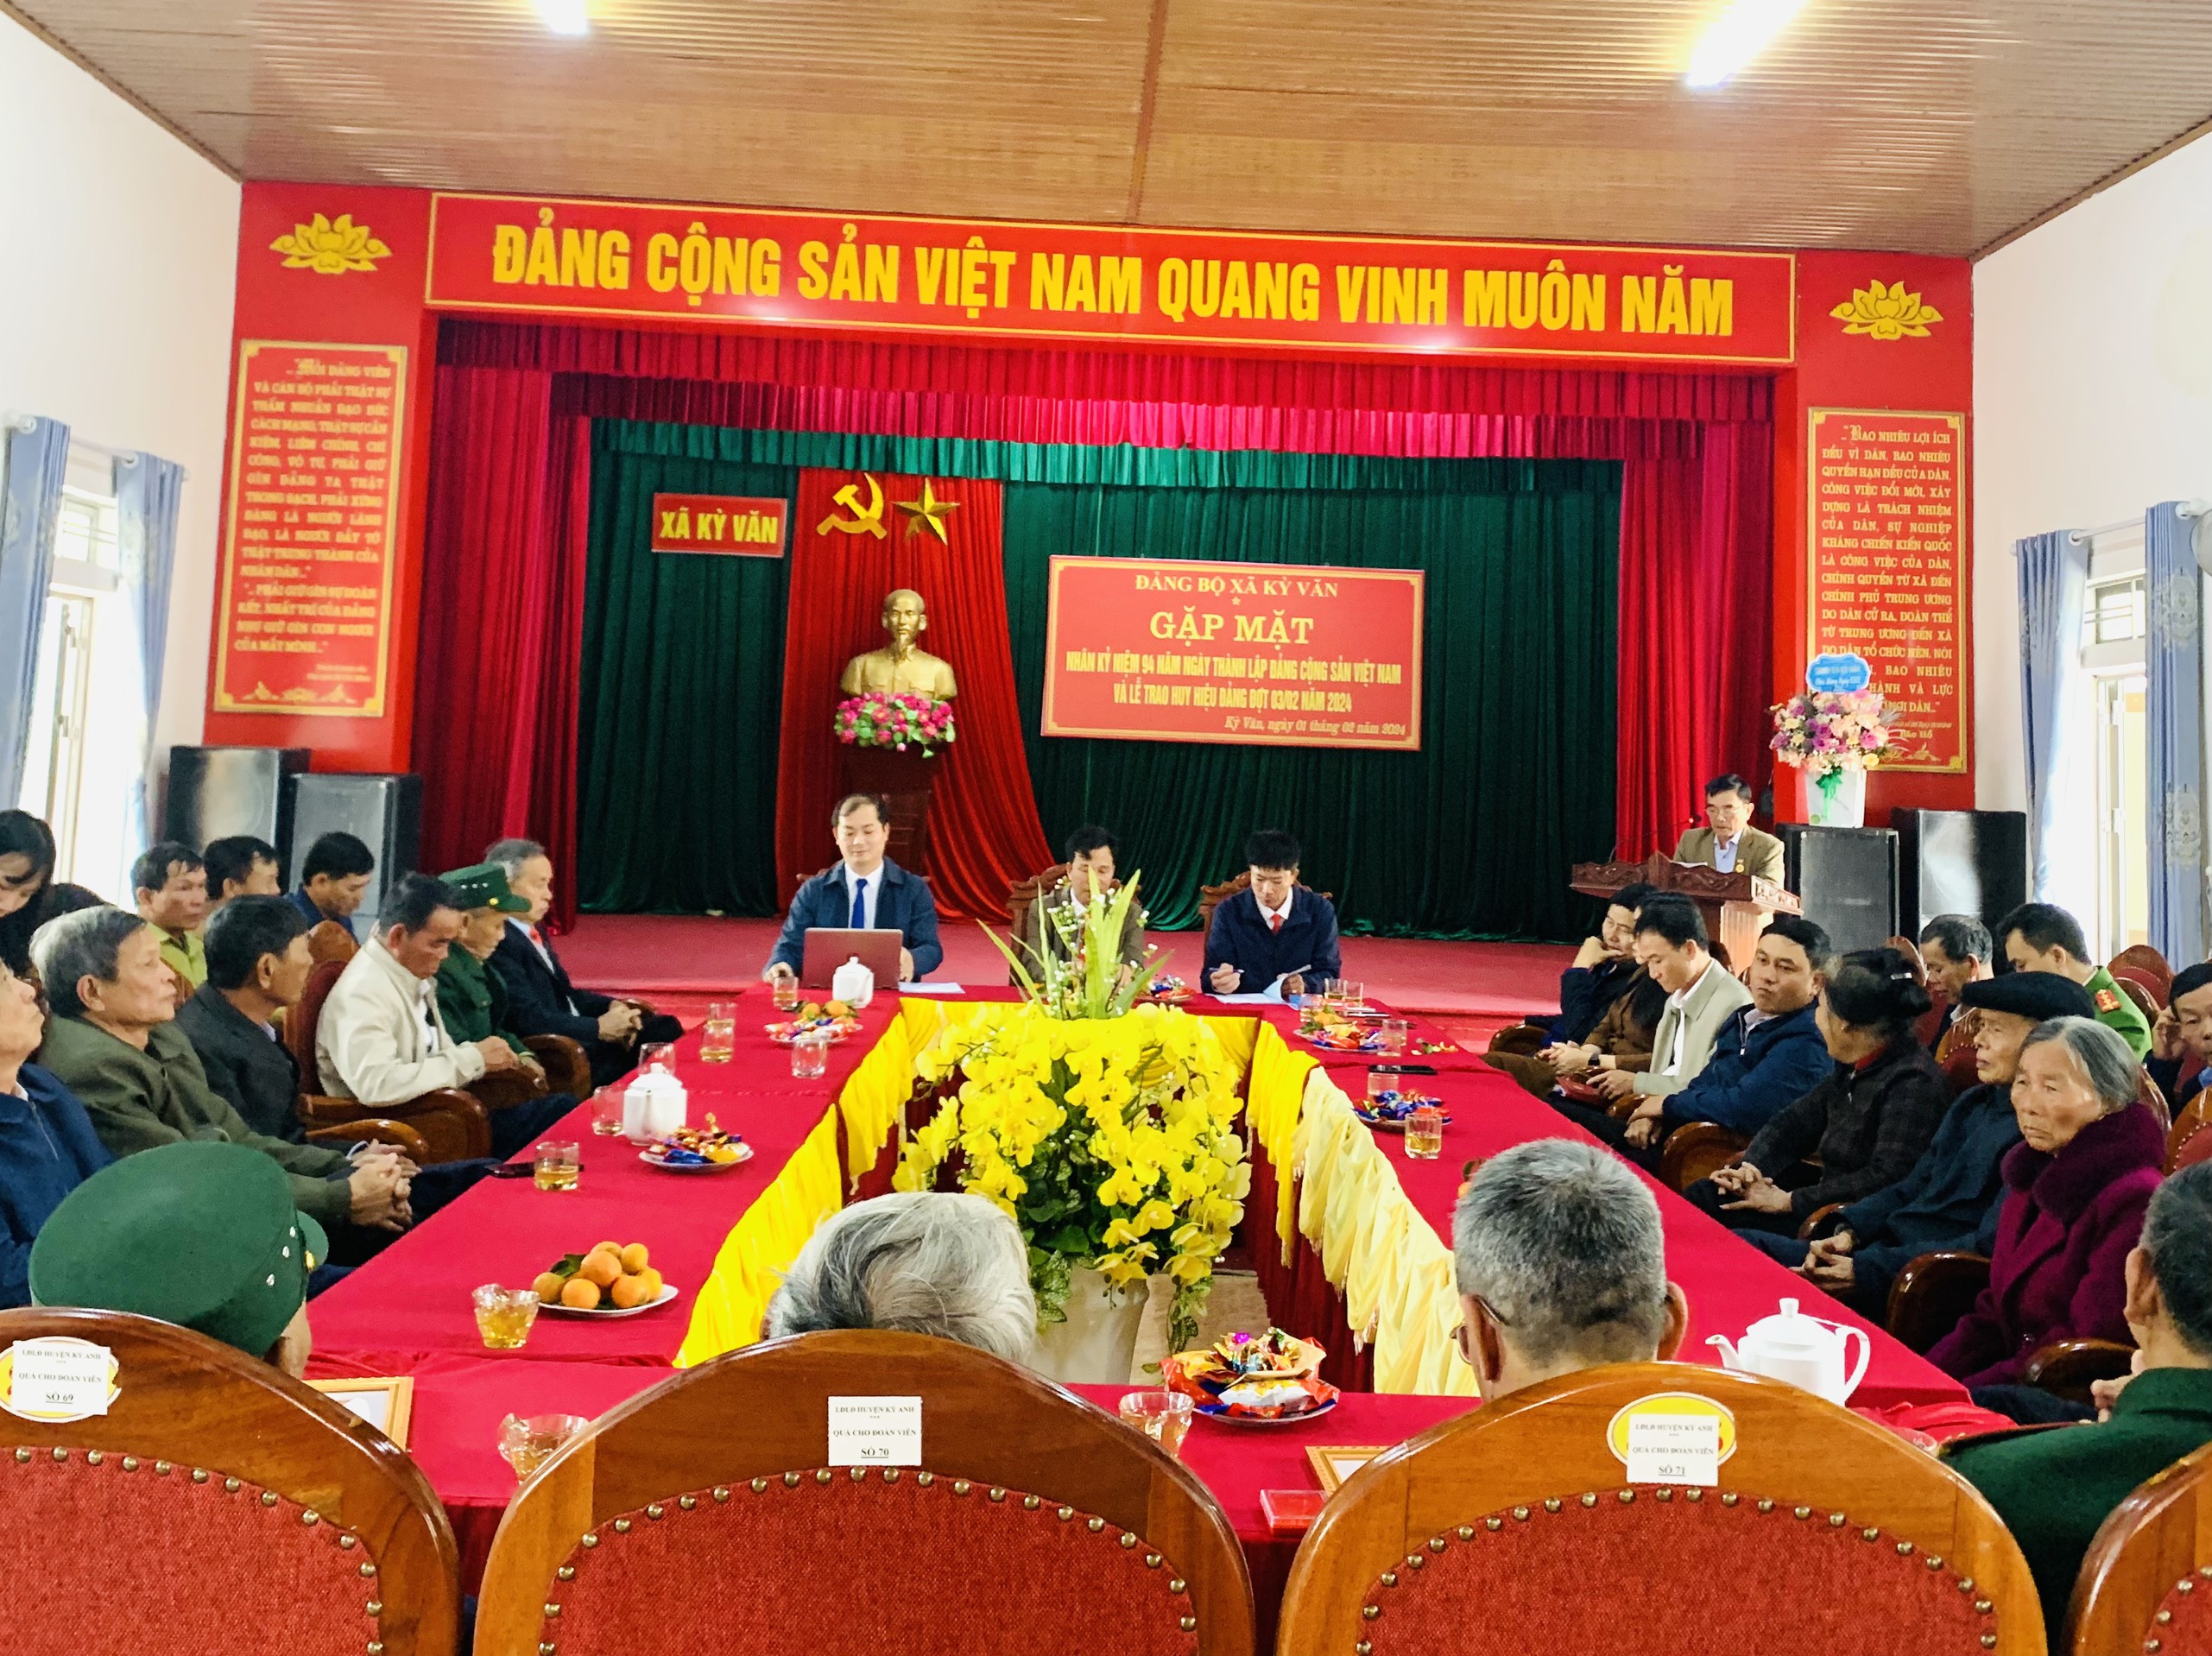 Ban Chấp hành Đảng bộ xã Kỳ Văn tổ chức gặp mặt nhân kỷ niệm 94 năm ngày thành lập Đảng Cộng sản Việt Nam (03/02/1930 – 03/02/2024)